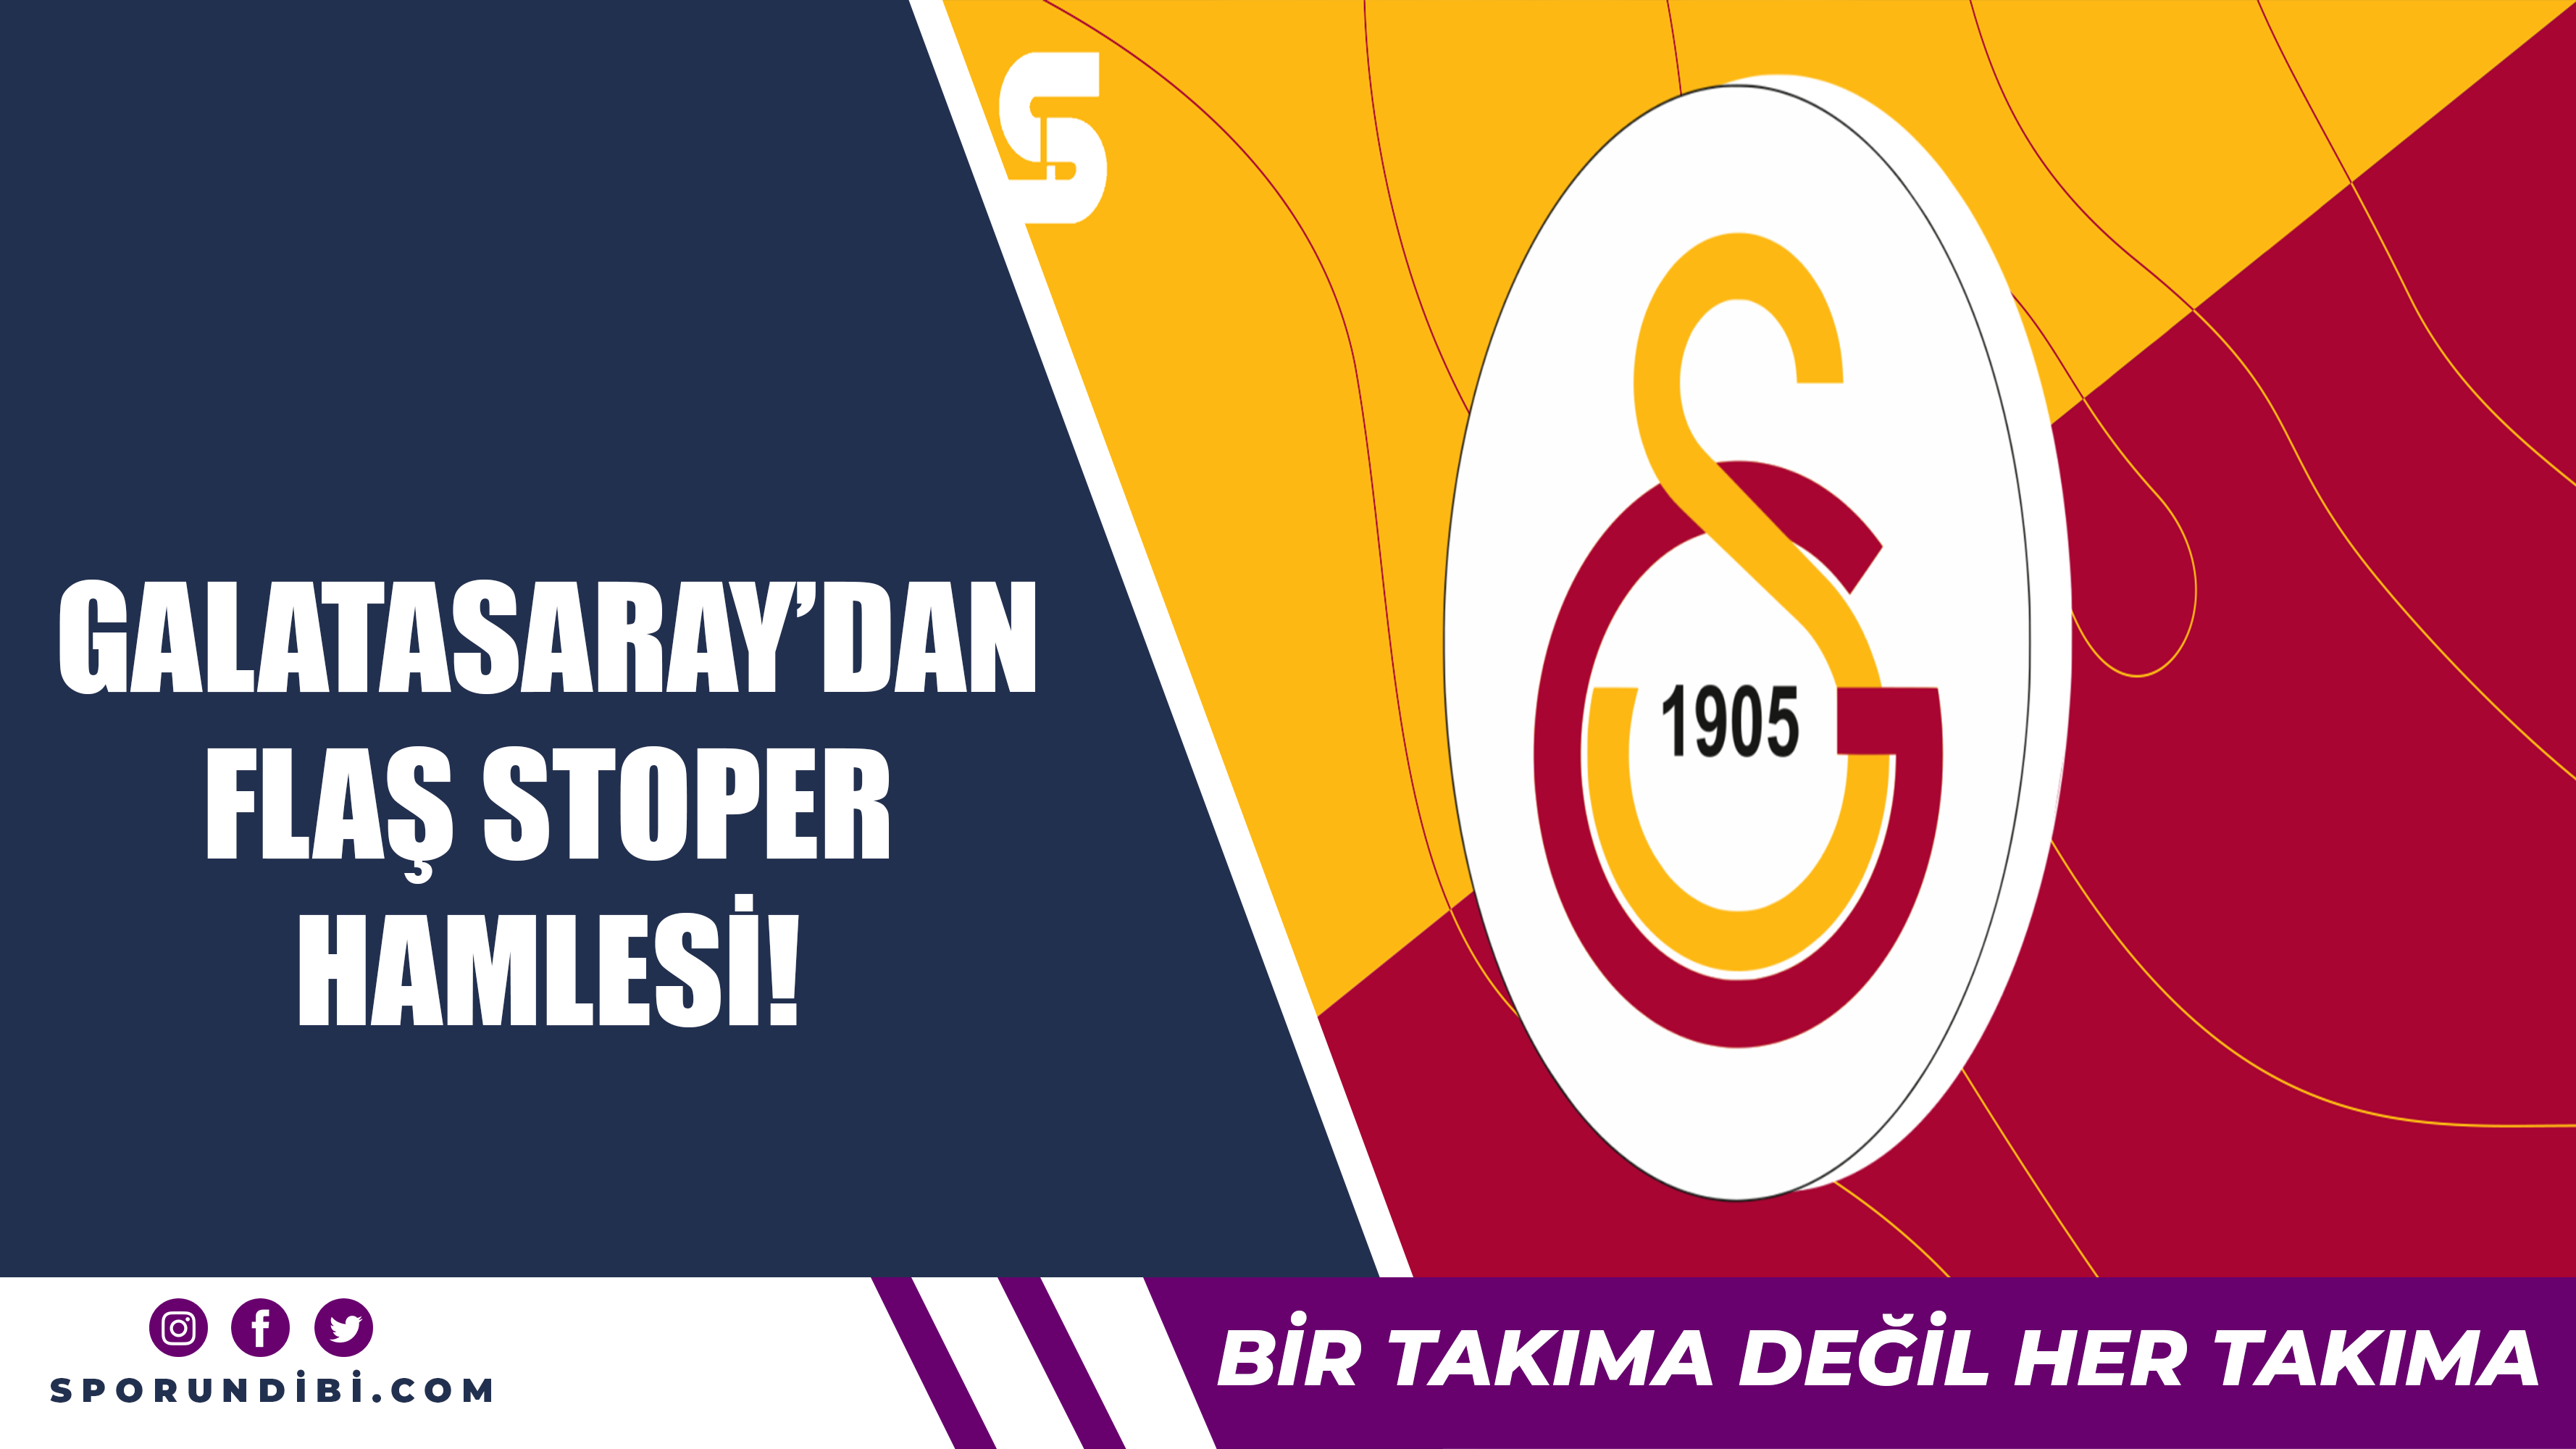 Galatasaray'dan flaş stoper hamlesi!